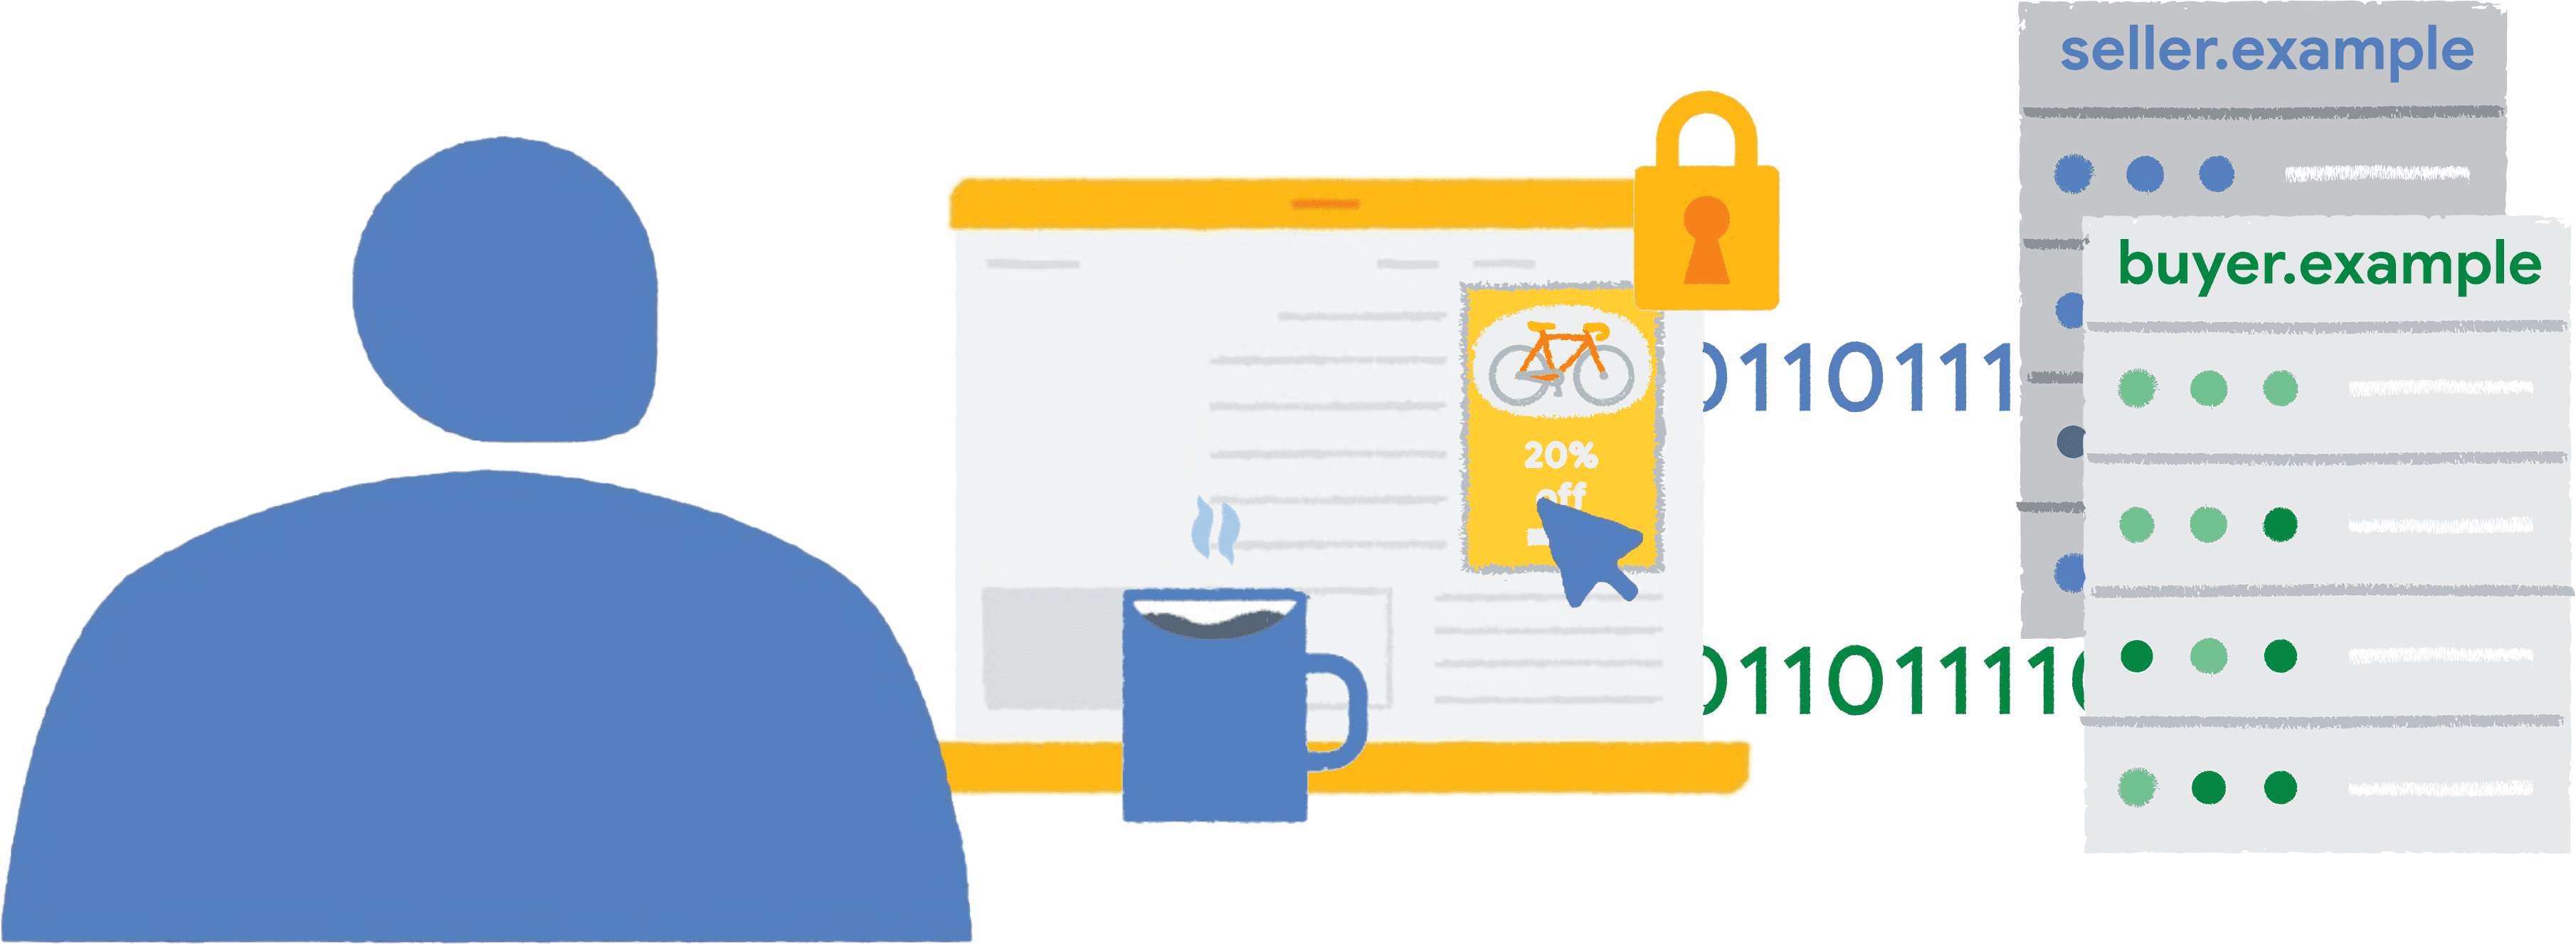 Una persona hace clic en un anuncio de una bicicleta, incorporado con un marco vallado, en un sitio web de noticias. Los datos del informe se envían al vendedor y a los compradores.